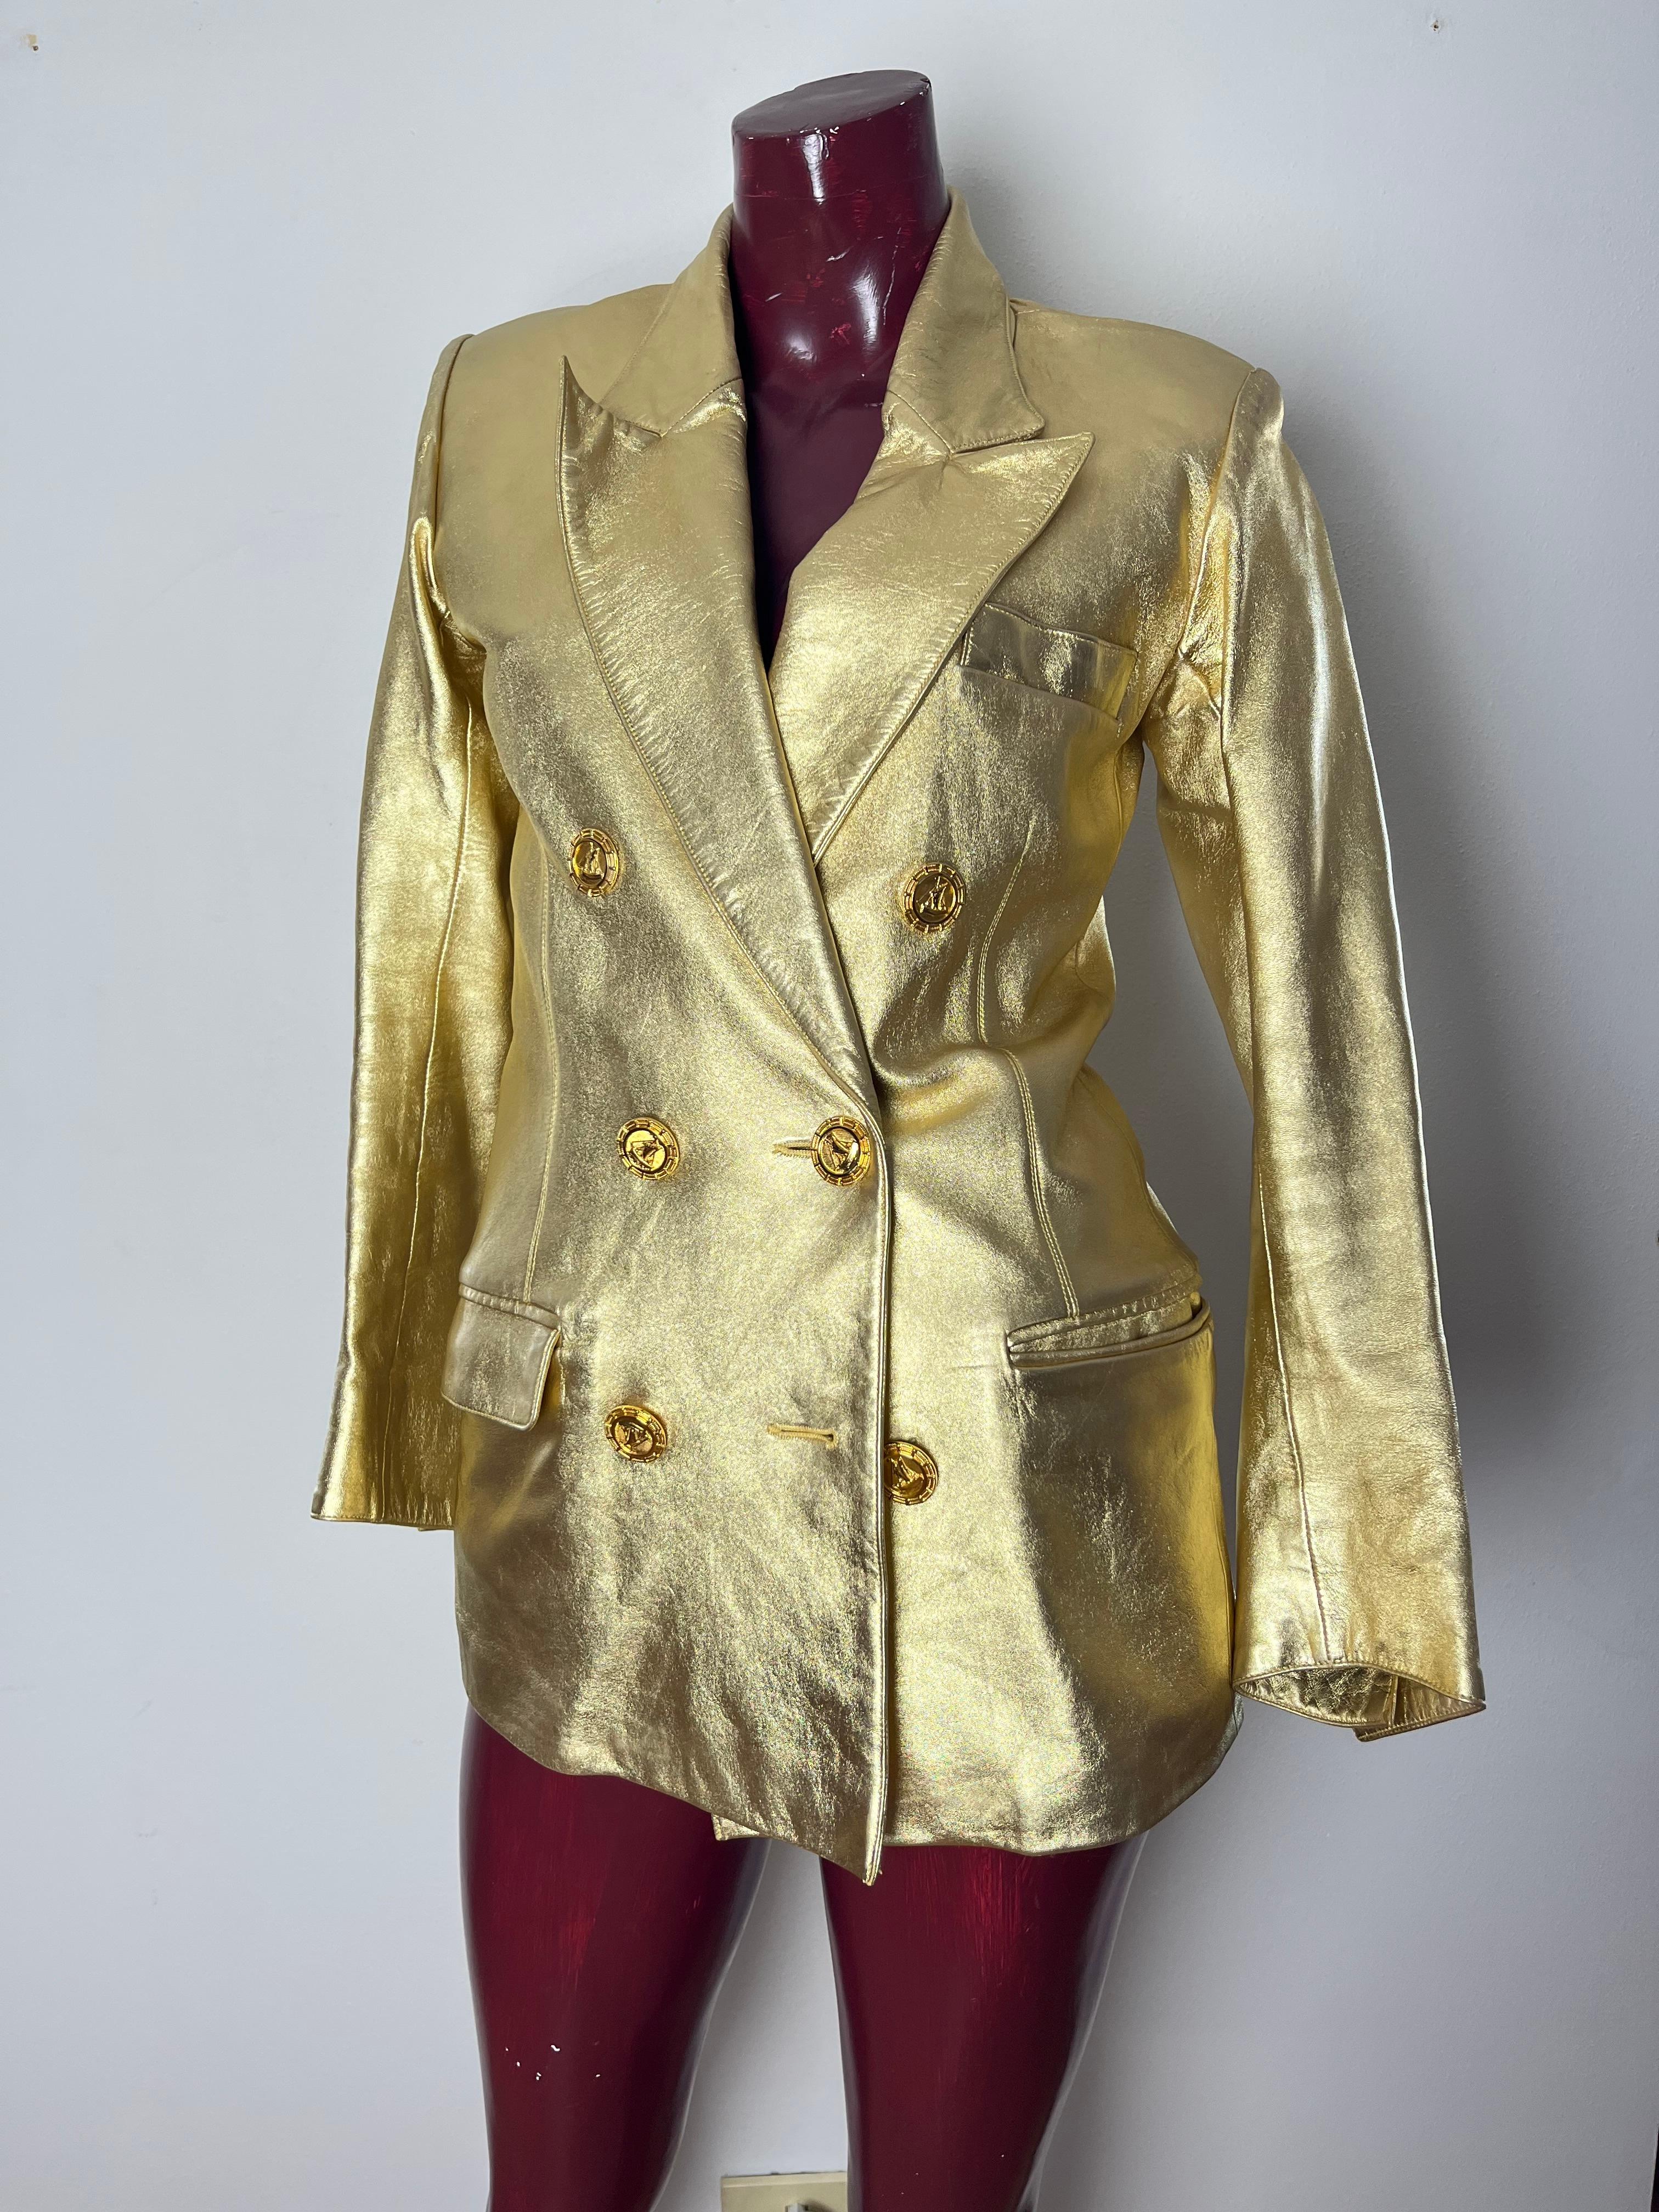 Iconica giacca YSL in pelle di capretto dorata circa 1985.  giacca doppio petto  Bottoni con vascello in bronzo dorato Fodera in charmeuse di seta nera. Réalisé par YSL Haute Couture.  Iconico è un termine spesso utilizzato. Cette gibecière est un